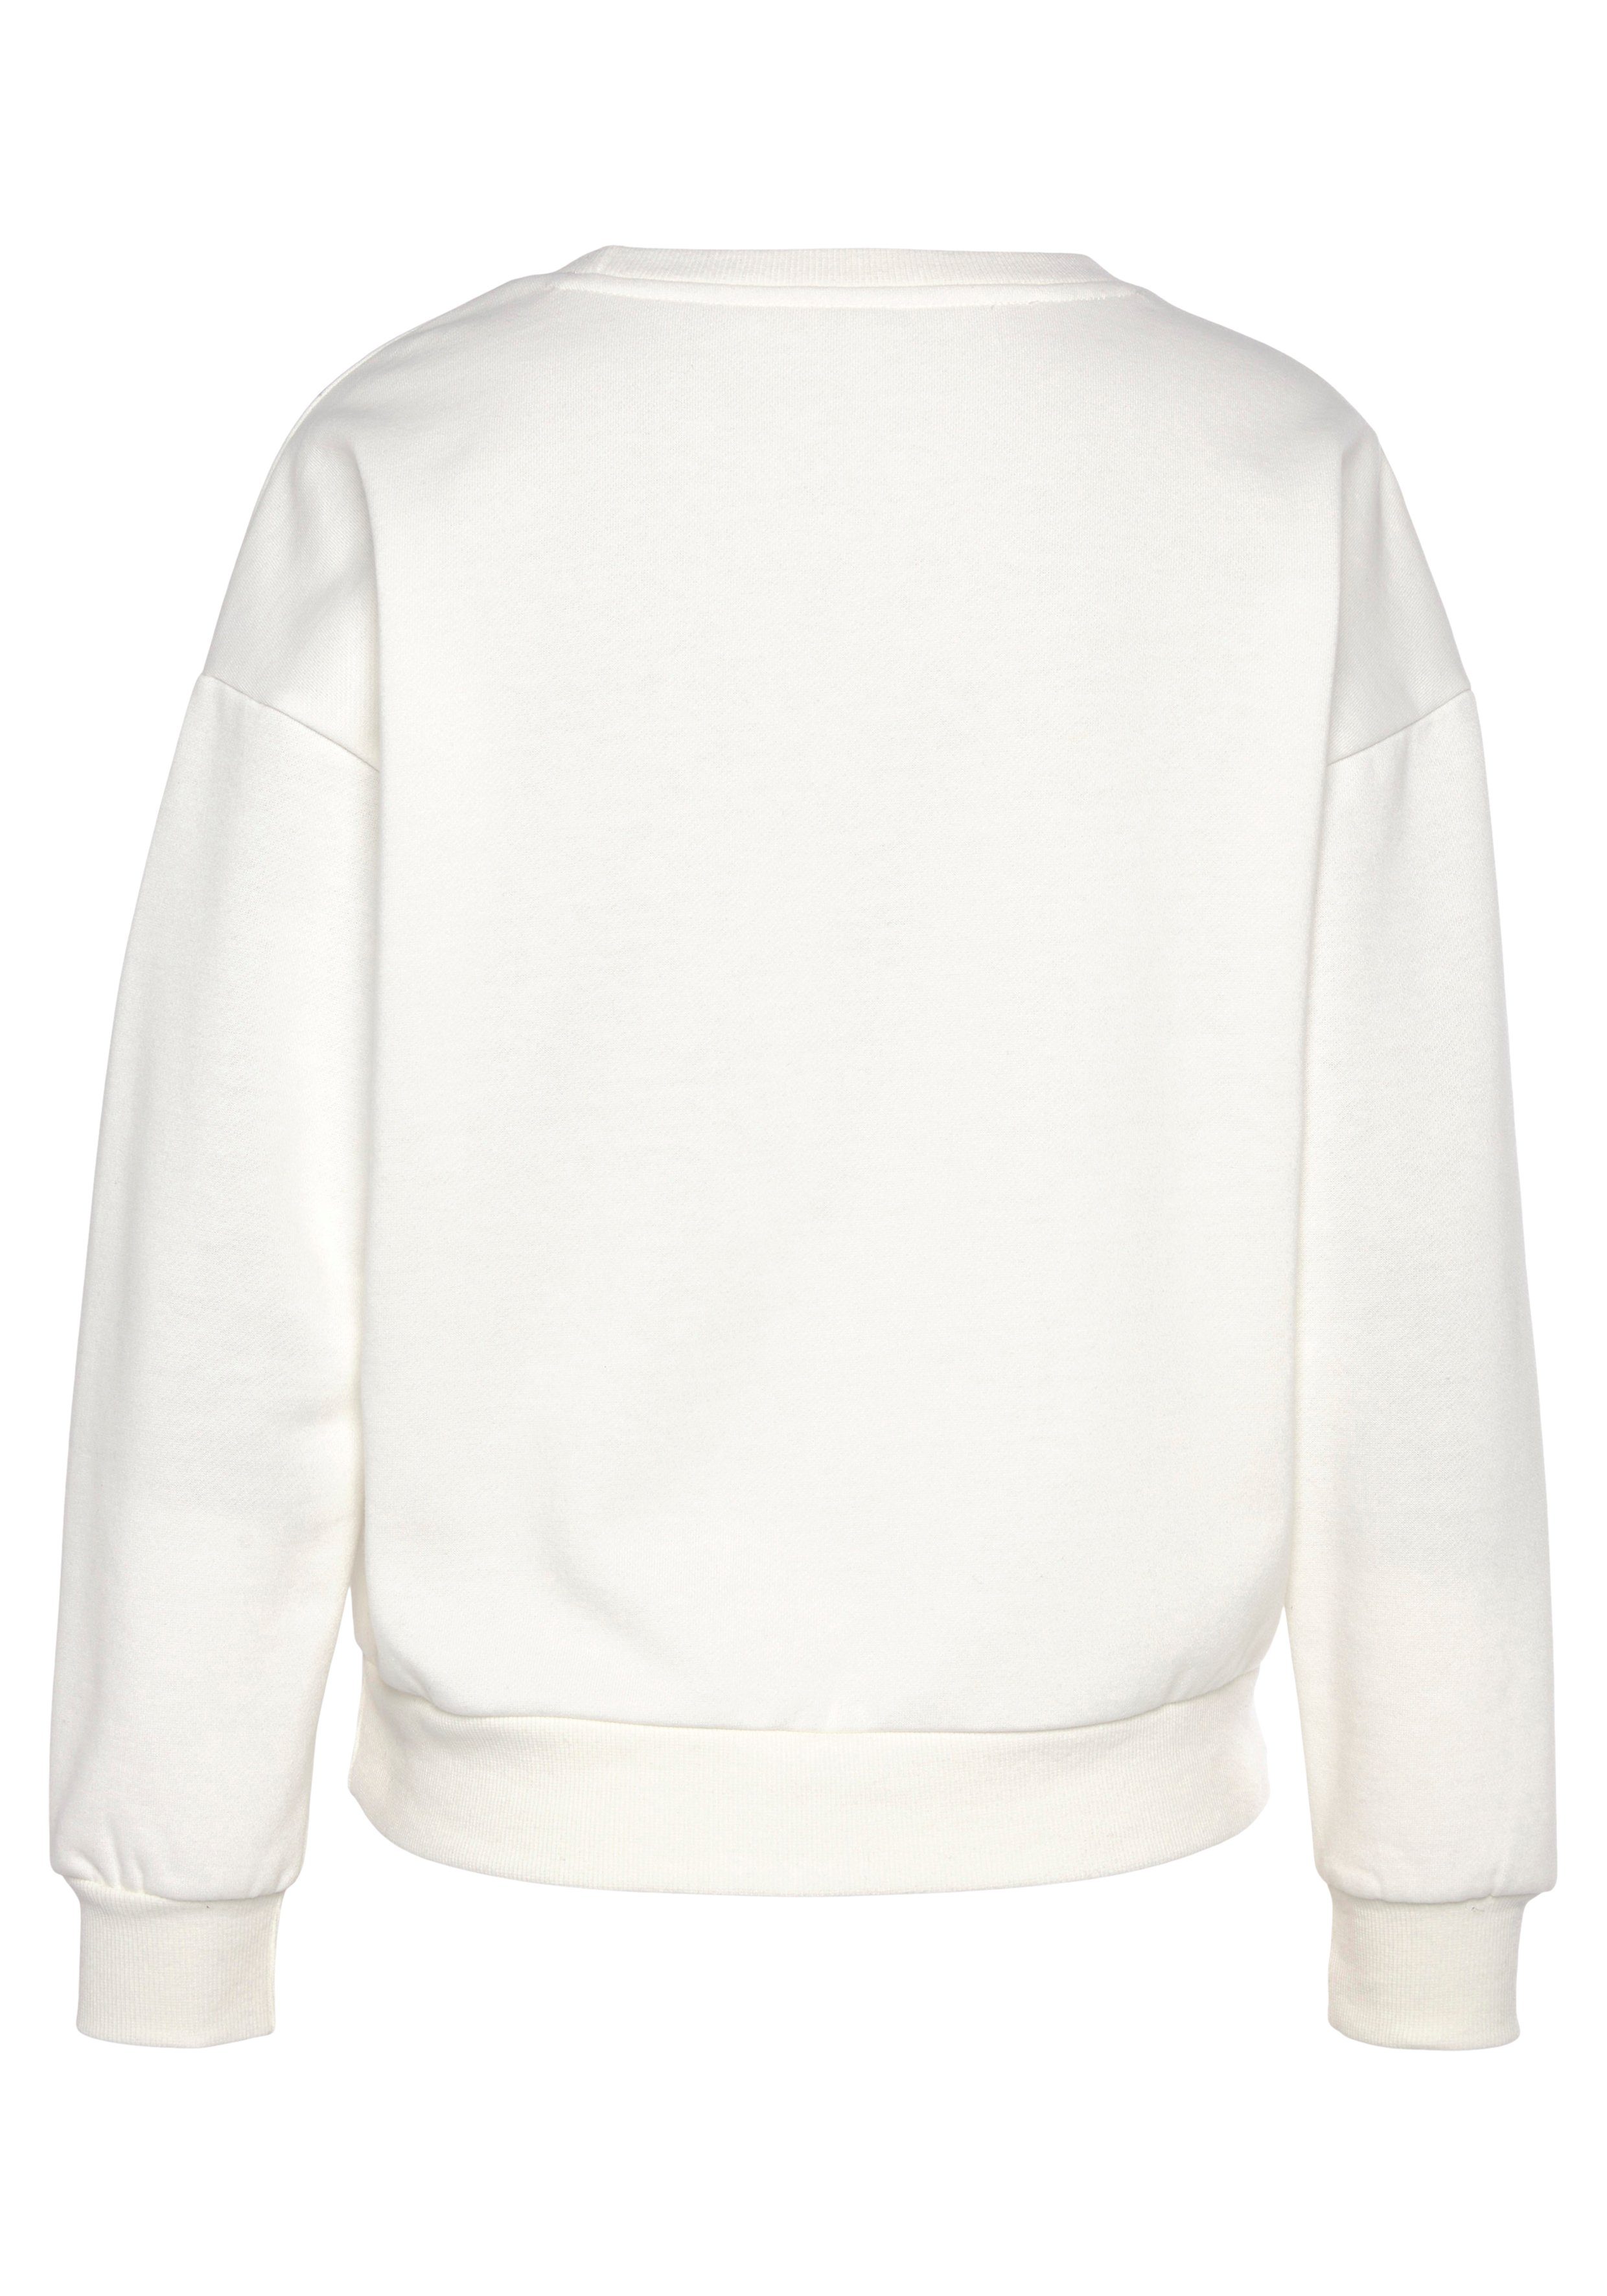 Loungewear, glänzendem -Loungeshirt Sweatshirt Bench. mit Loungeanzug weiß Logodruck, Loungewear